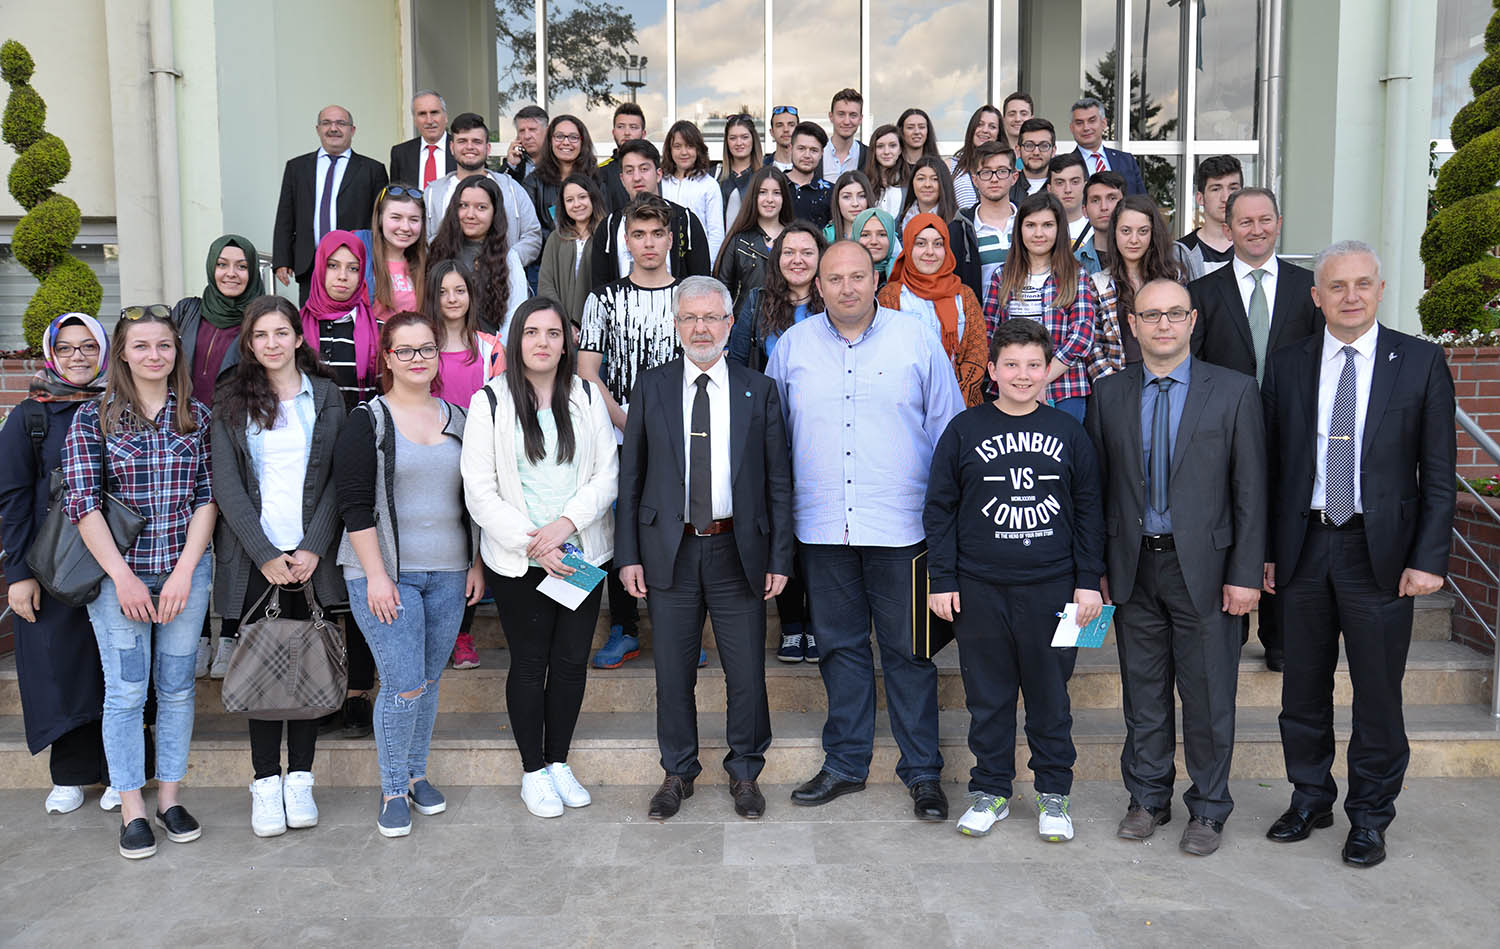 UÜ yönetimi, Yunanistan’dan gelen lise öğrencilerini ağırladı